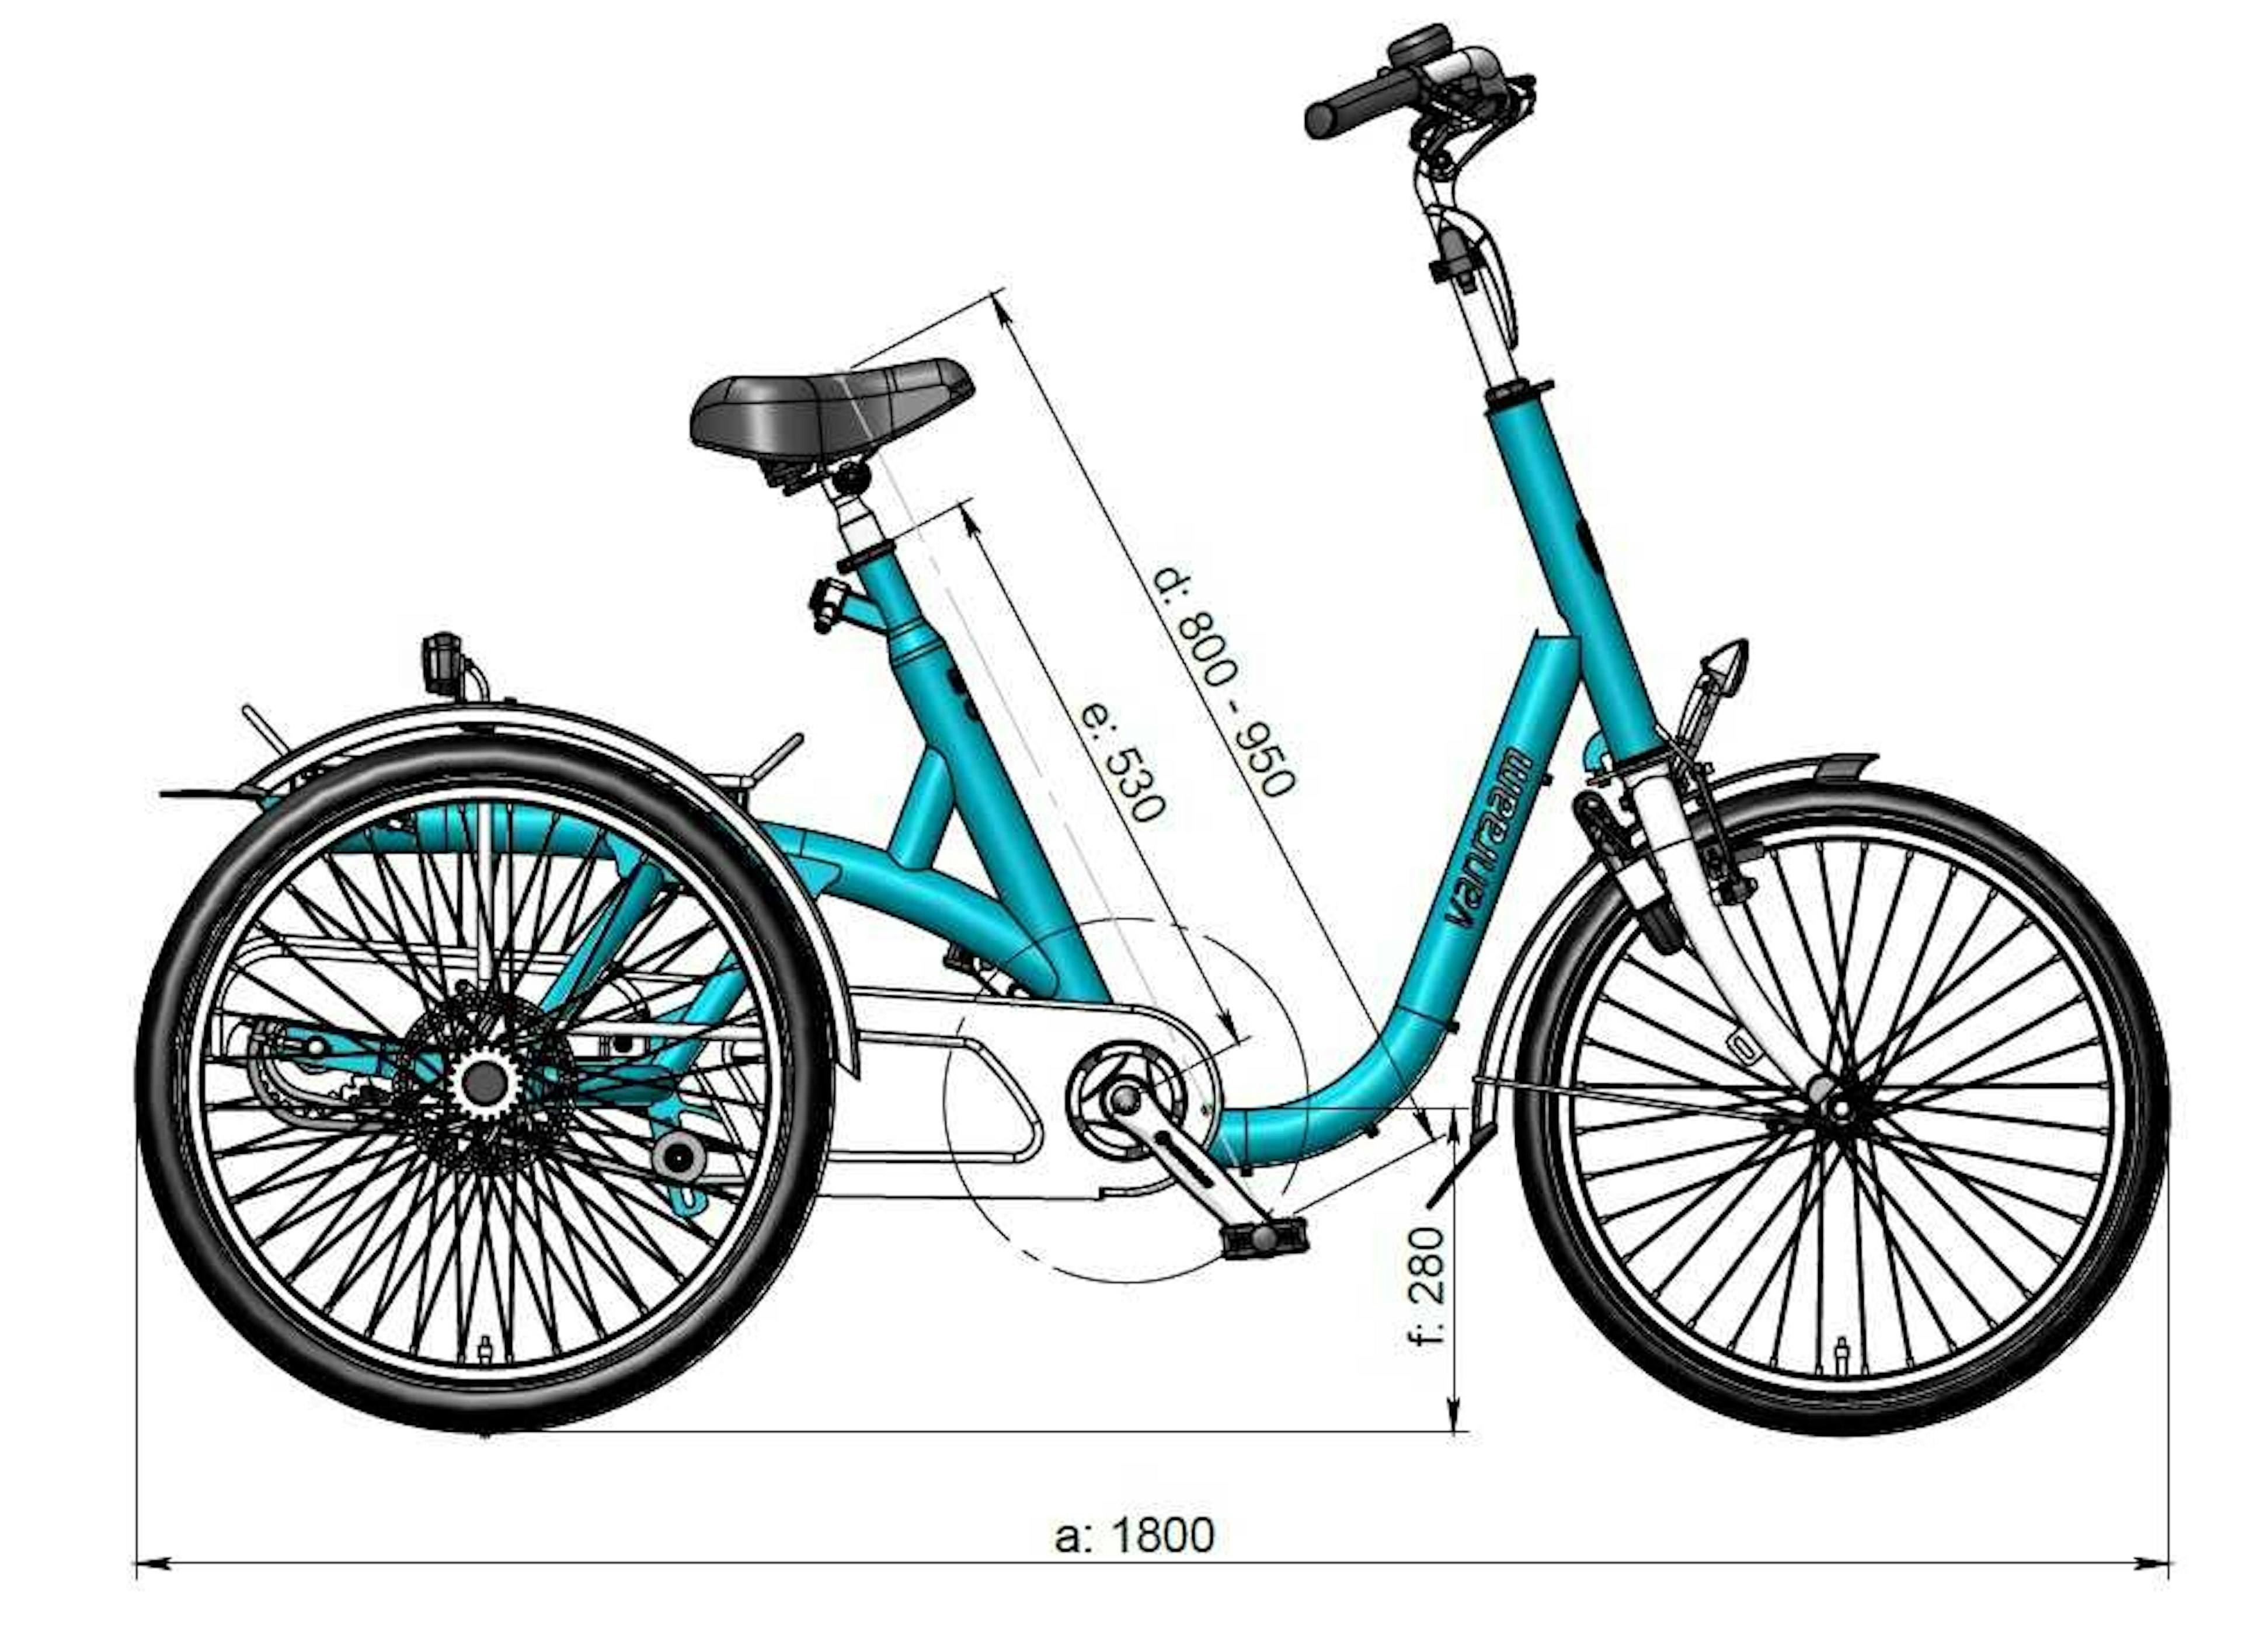 Maxi tricycle dimensions Van Raam